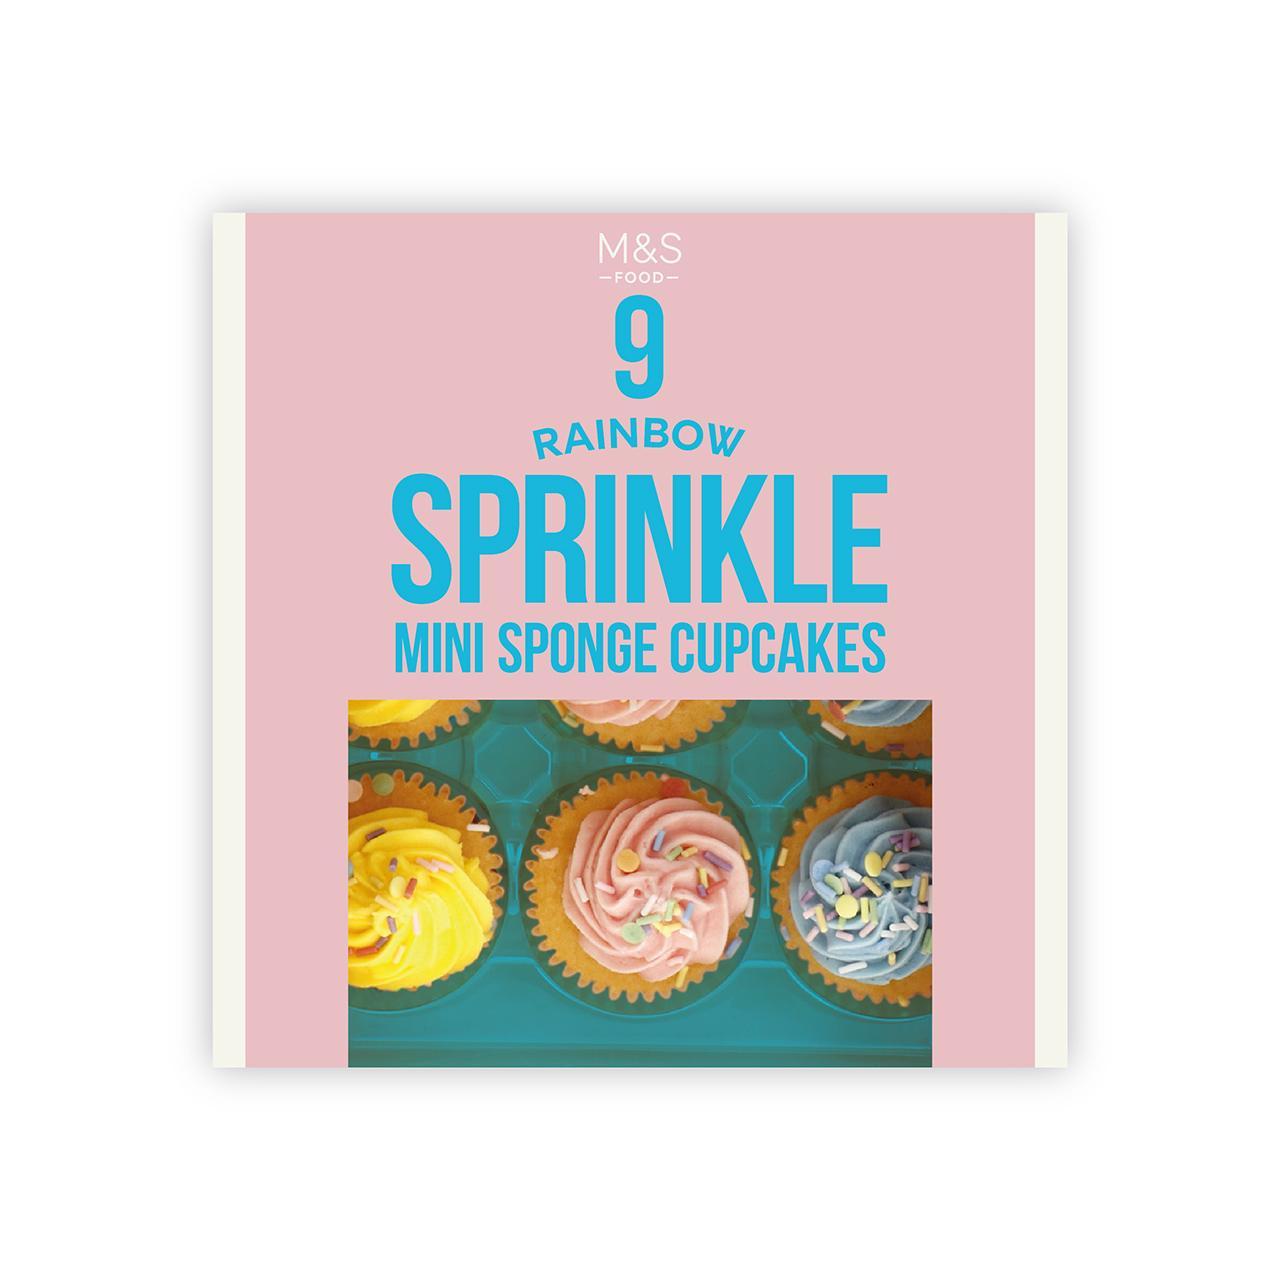 M&S 9 Rainbow Sprinkle Mini Sponge Cupcakes